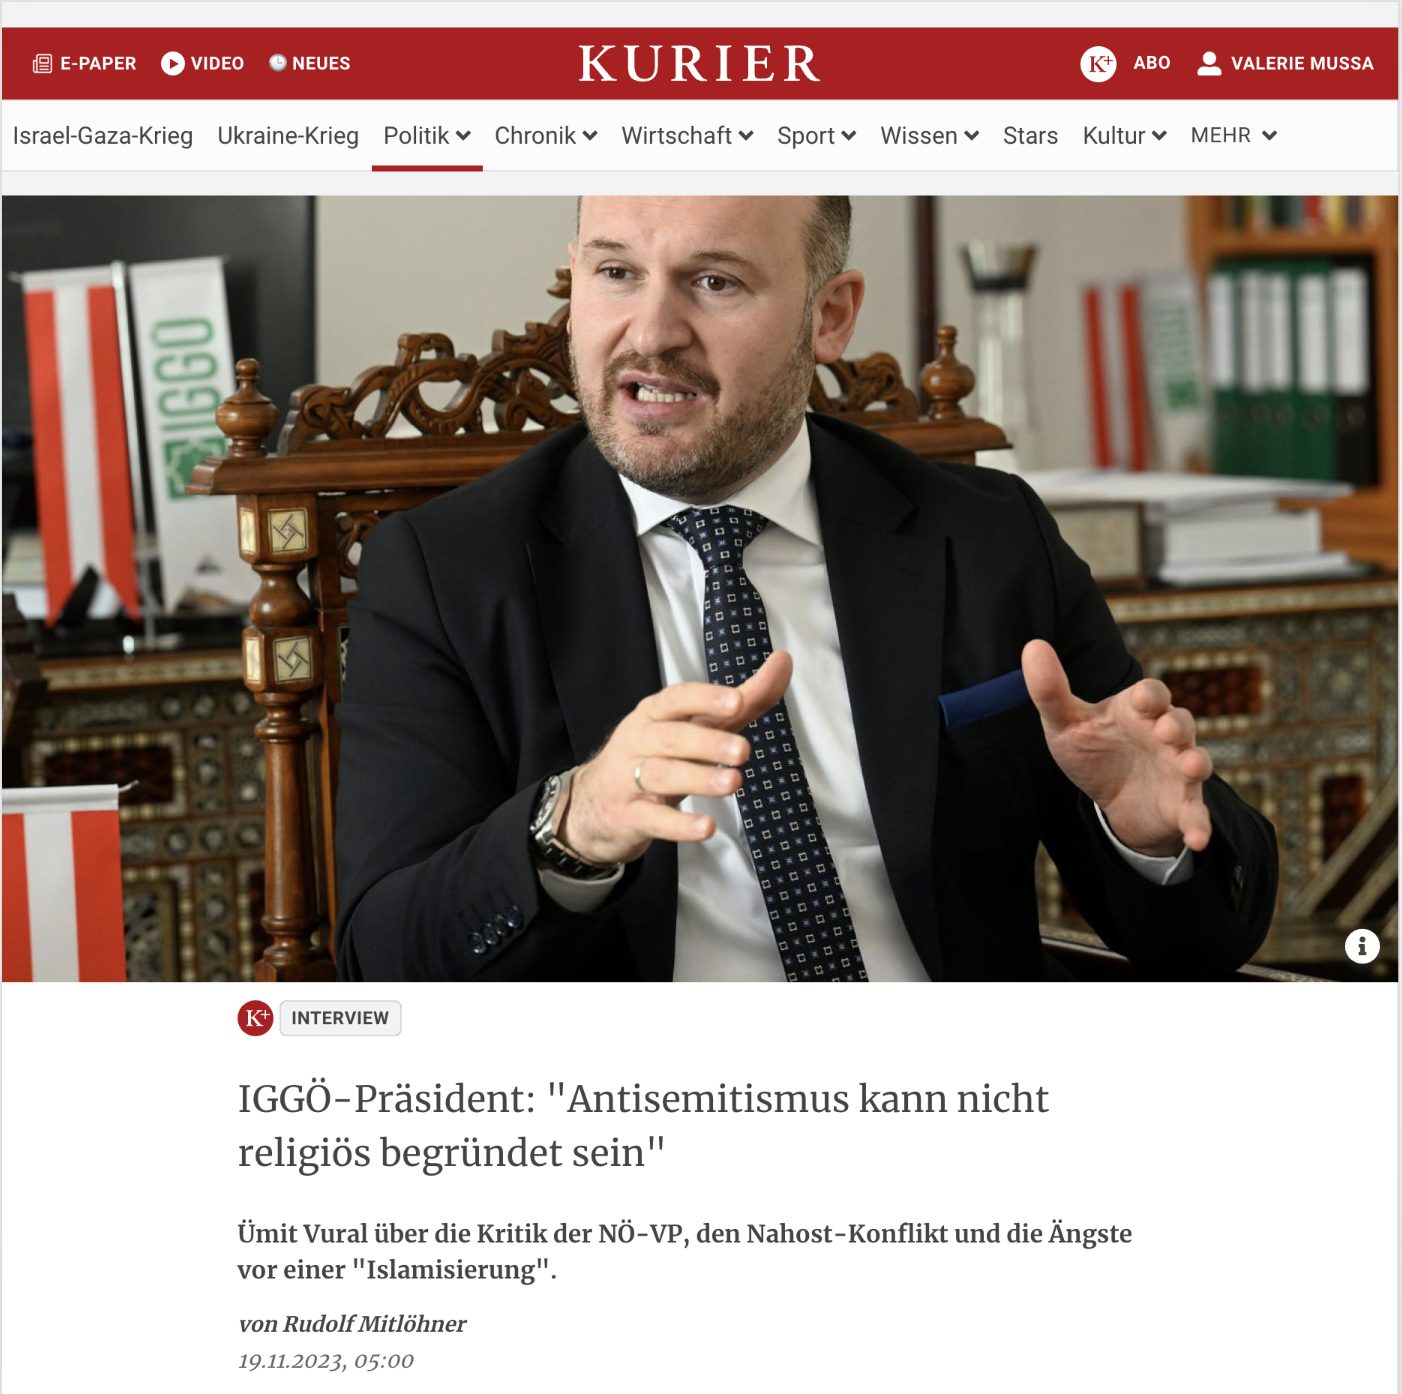 IGGÖ-Präsident im Kurier Interview: “Antisemitismus kann nicht religiös begründet sein”